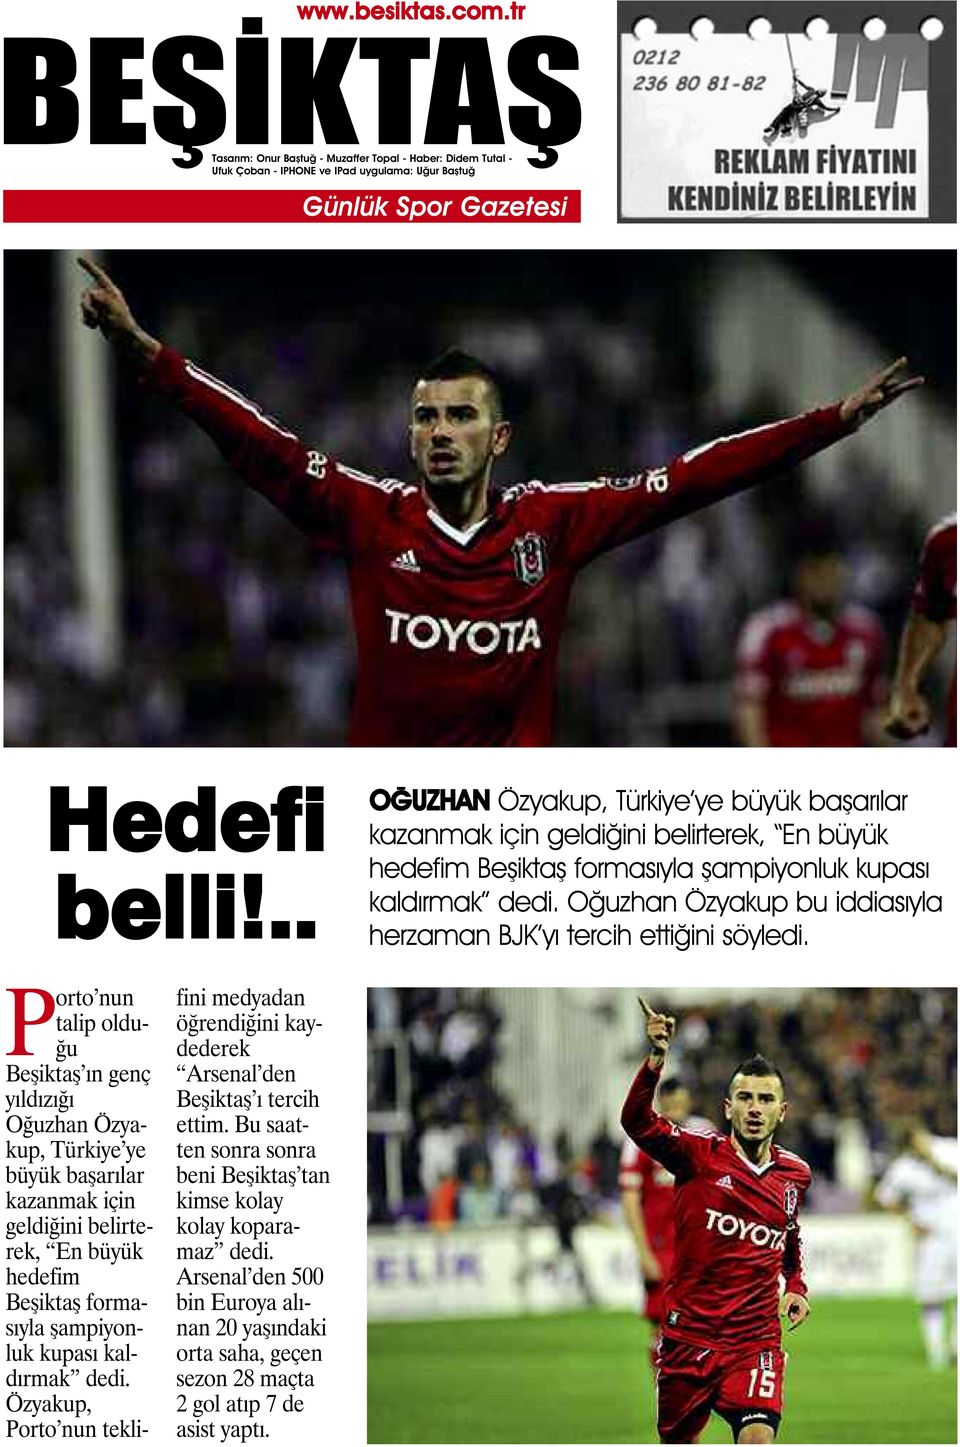 Porto nun talip olduğu Beşiktaş ın genç yıldızığı Oğuzhan Özyakup, Türkiye ye büyük başarılar kazanmak için geldiğini belirterek, En büyük hedefim Beşiktaş formasıyla şampiyonluk